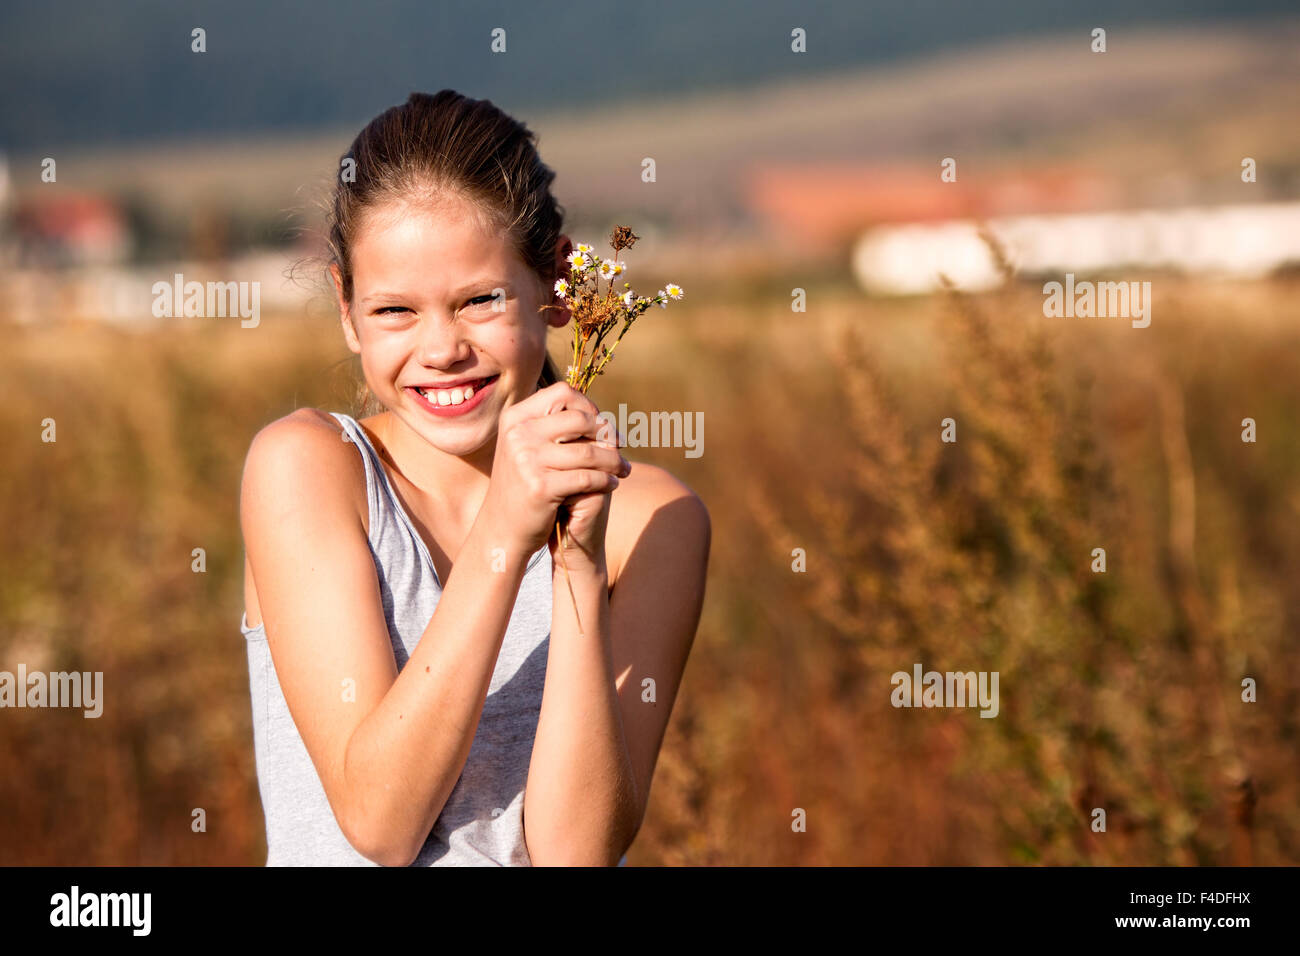 Belle, jeune fille de 11 ans dans le domaine, smiling, quelques fleurs Banque D'Images